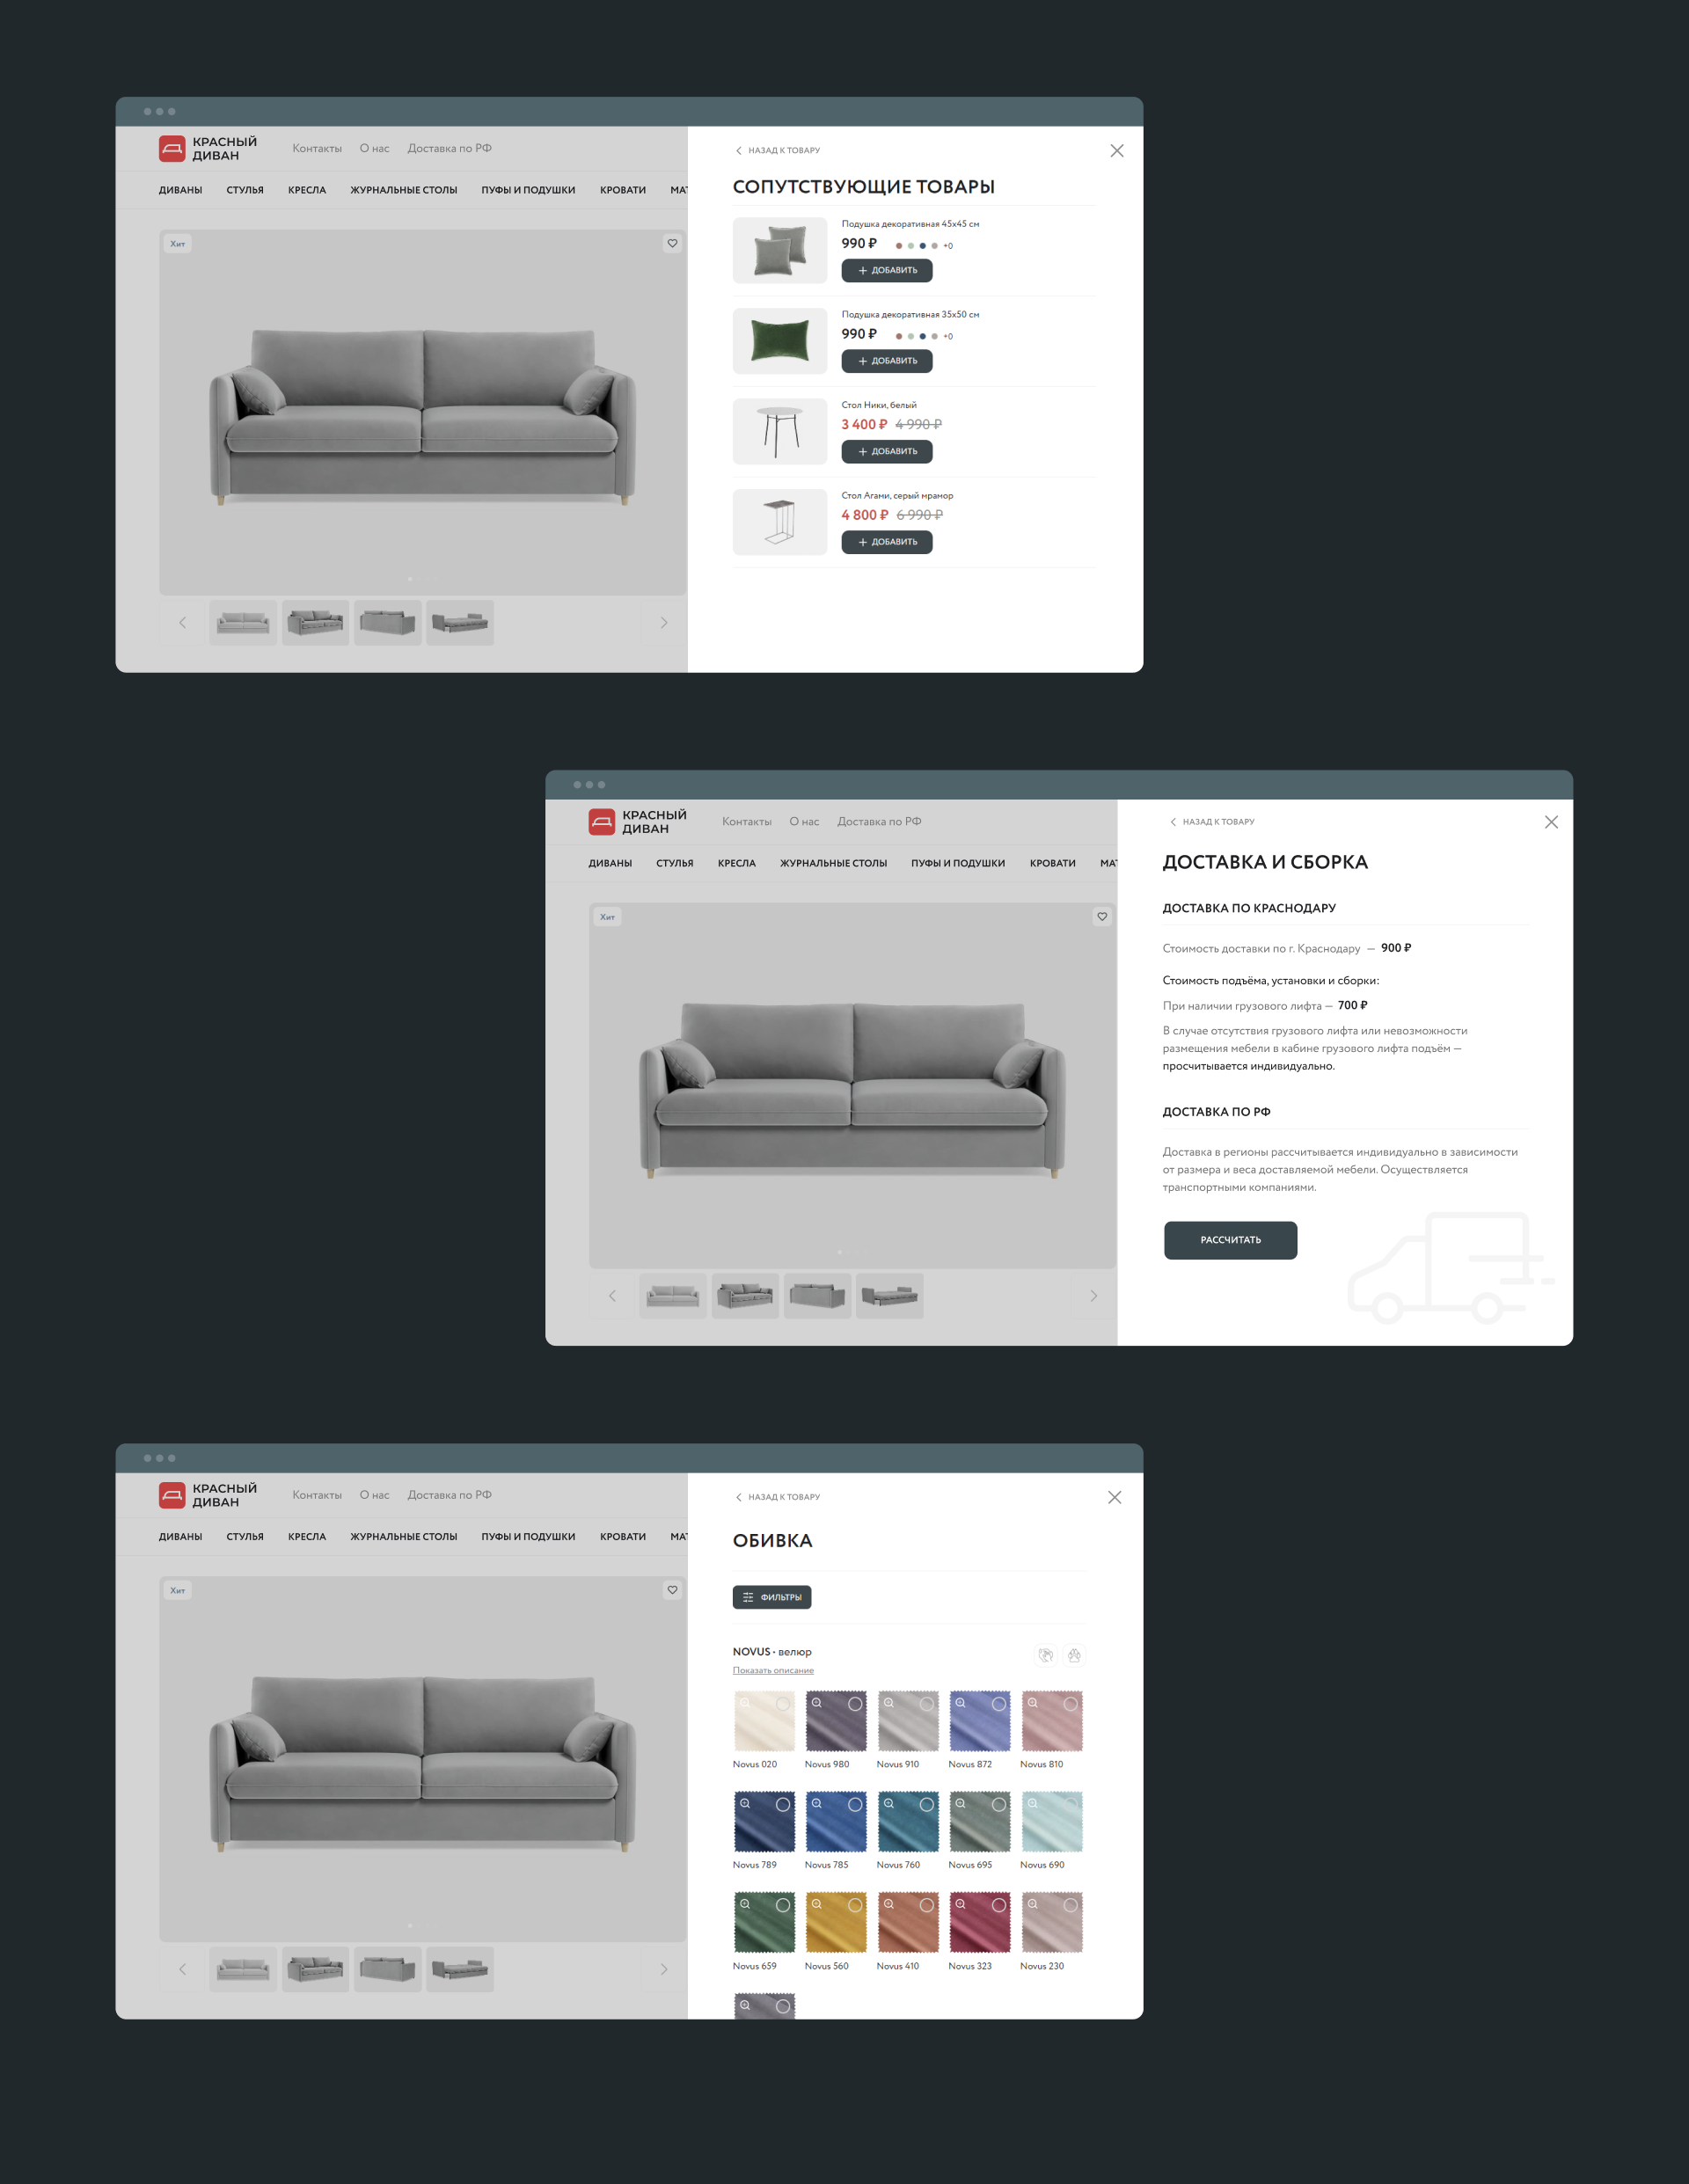 Красный диван — Изображение №9 — Интерфейсы, Анимация на Dprofile